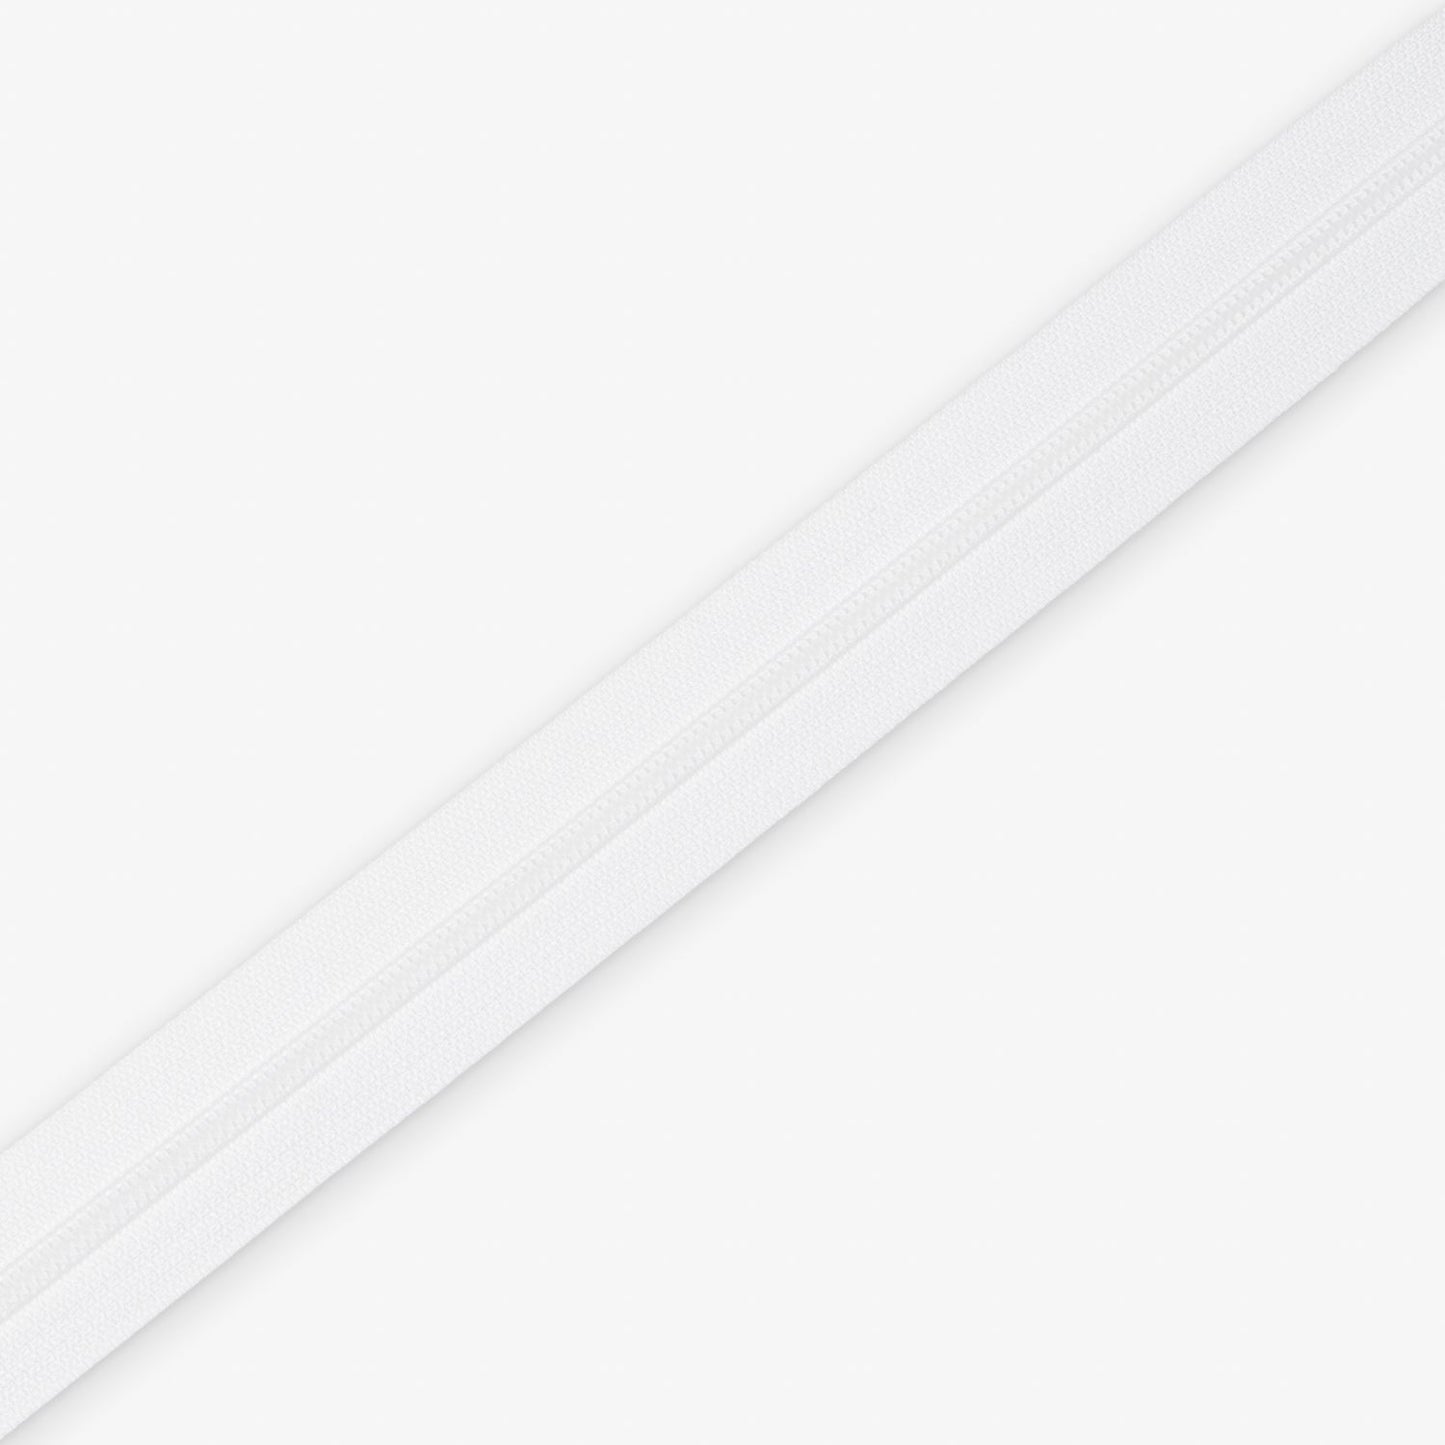 Zip Chain Type 5 (50m) White C101